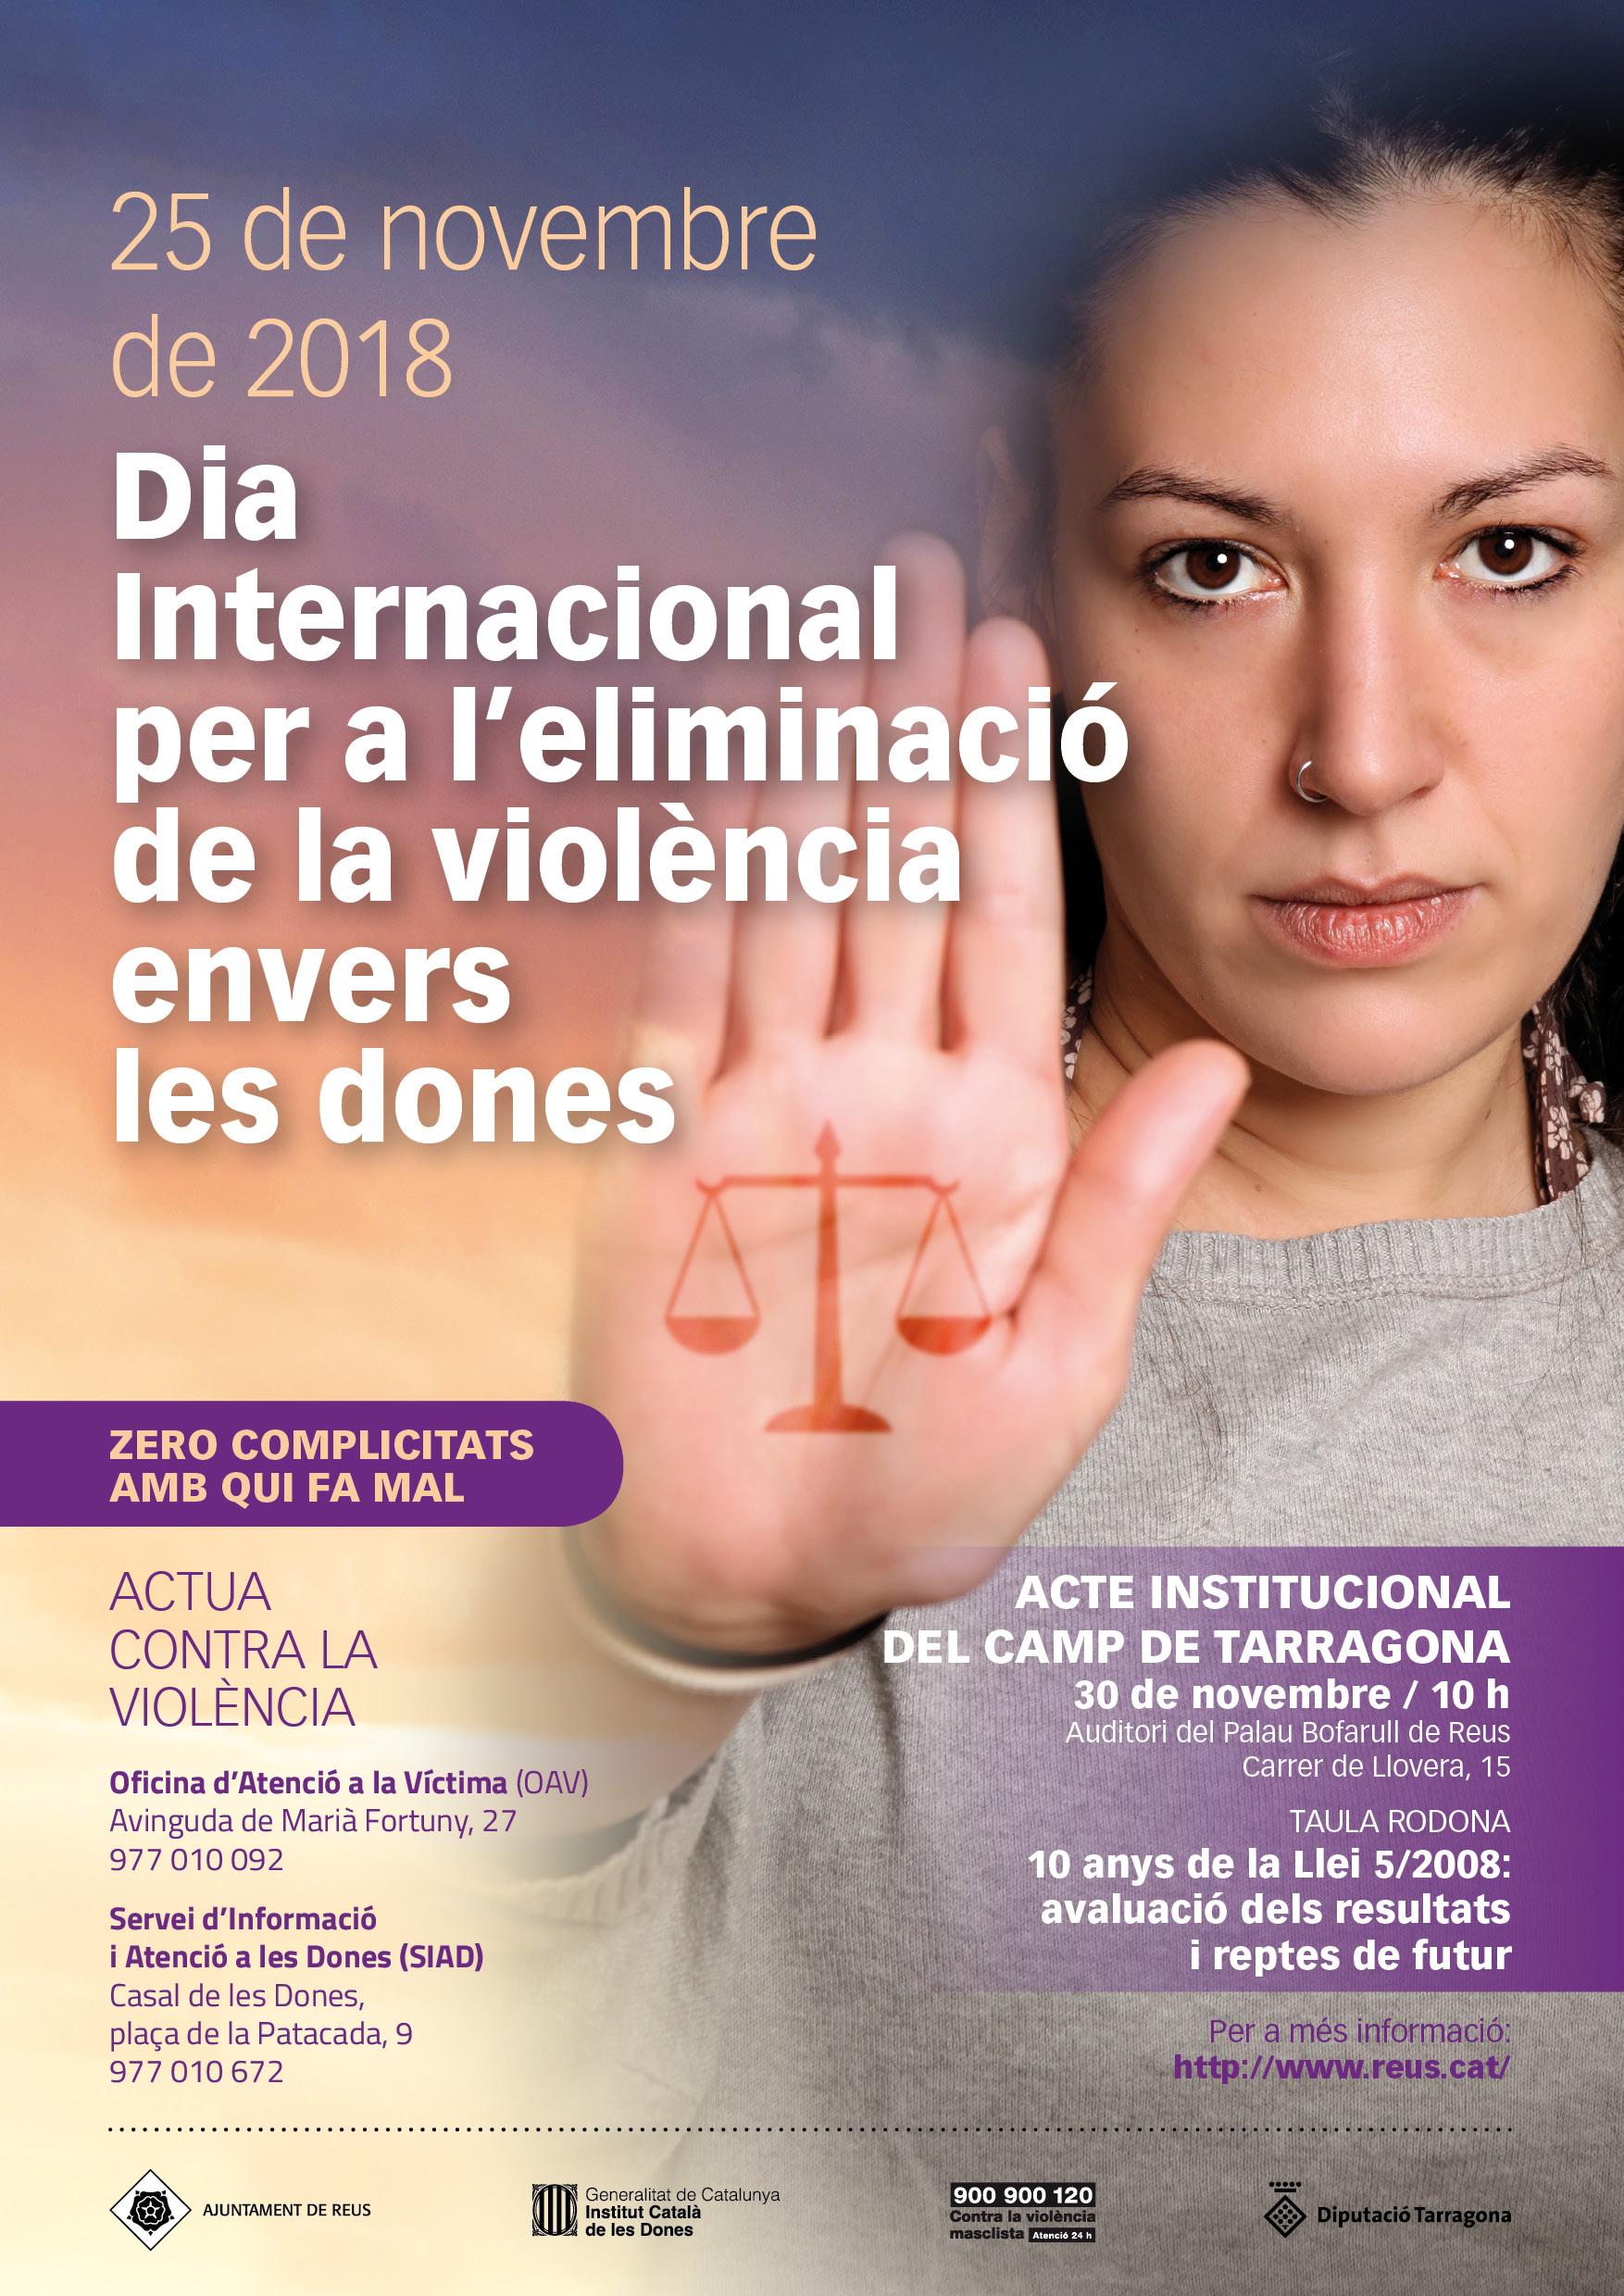 Acte institucional del Camp de Tarragona amb motiu del Dia Internacional per a l’eliminació de la violència envers les dones 2018